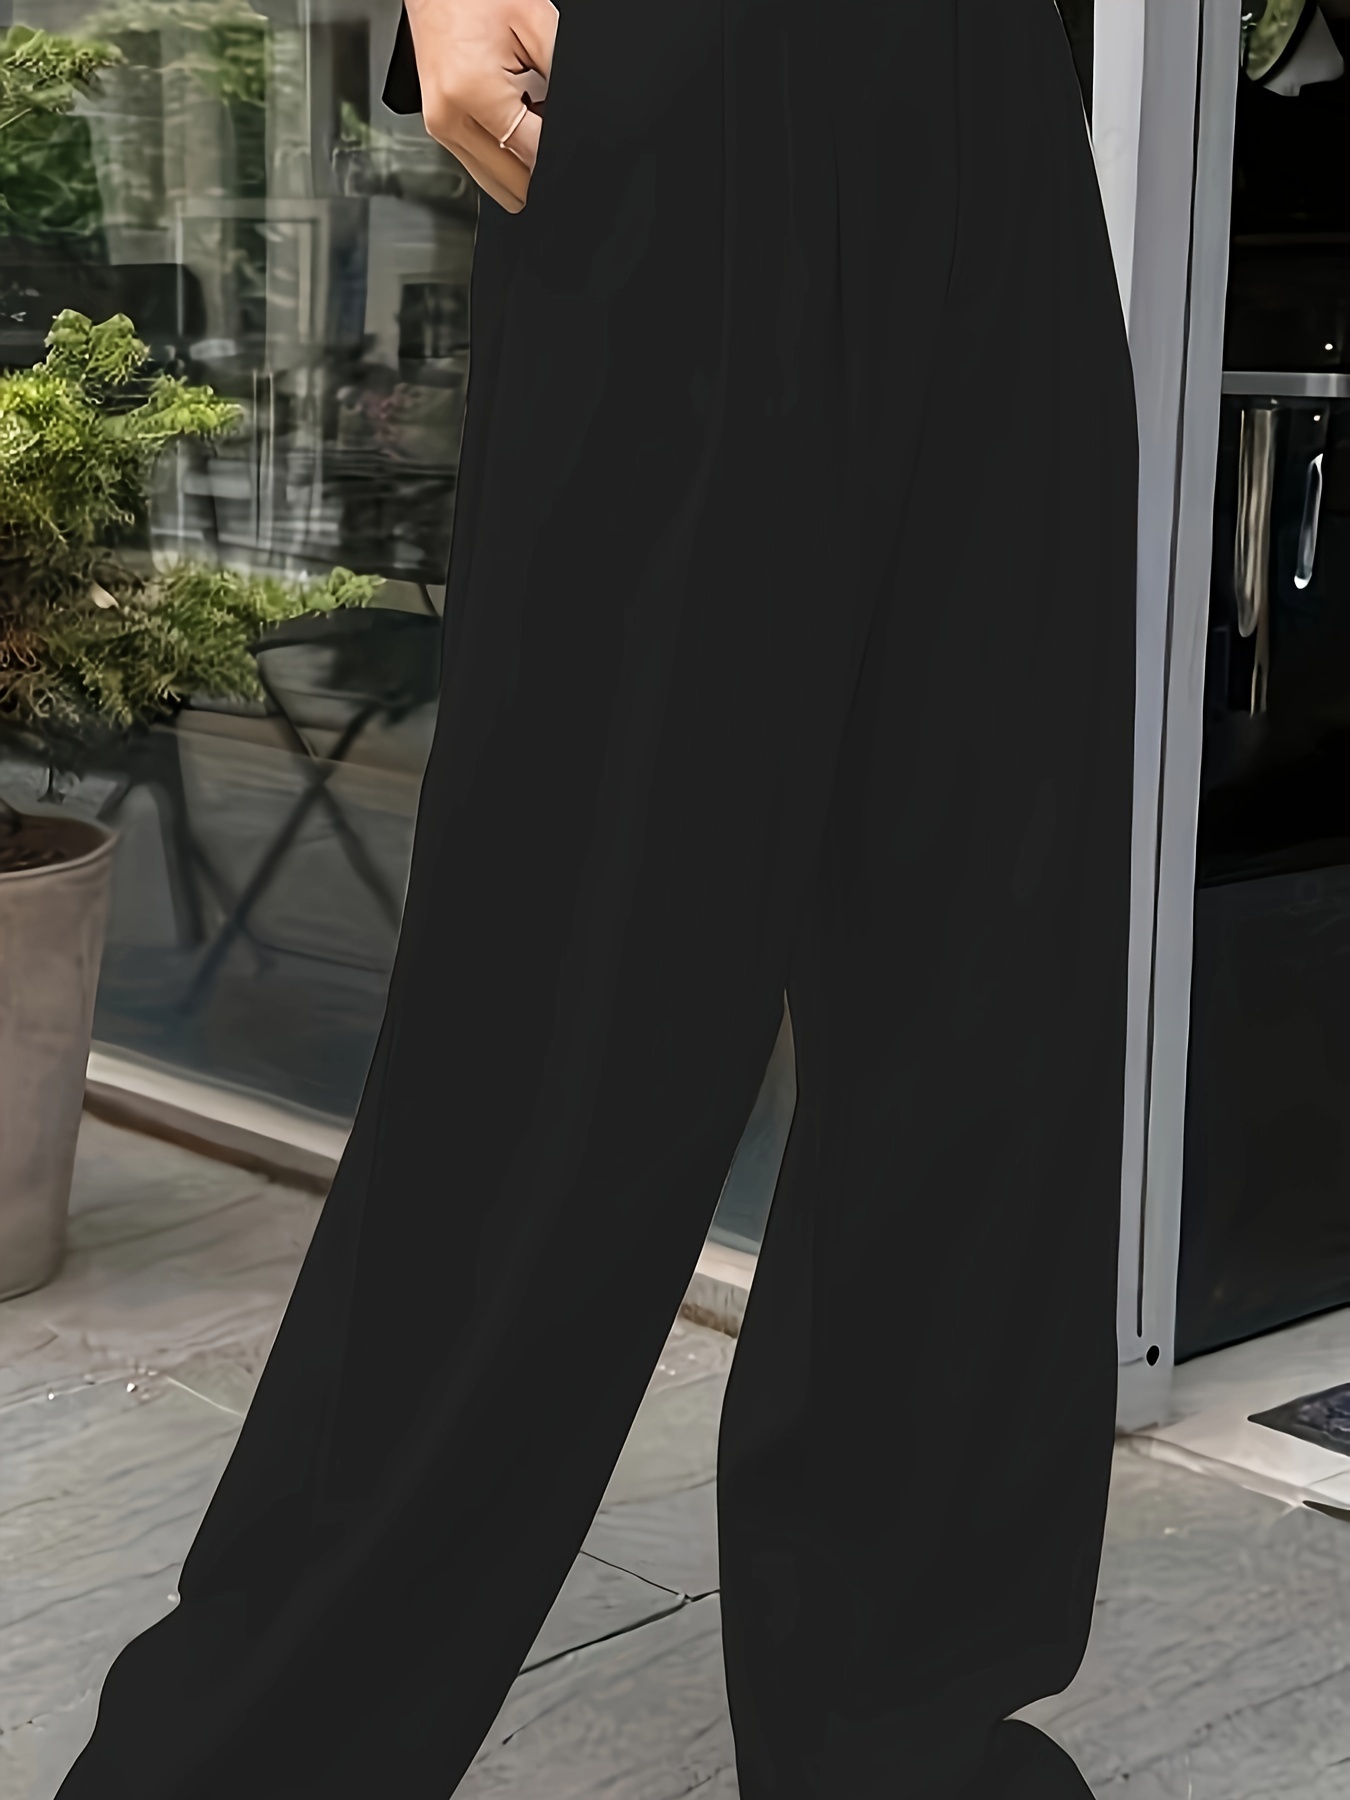 Pocket Detail Suit Pants Black